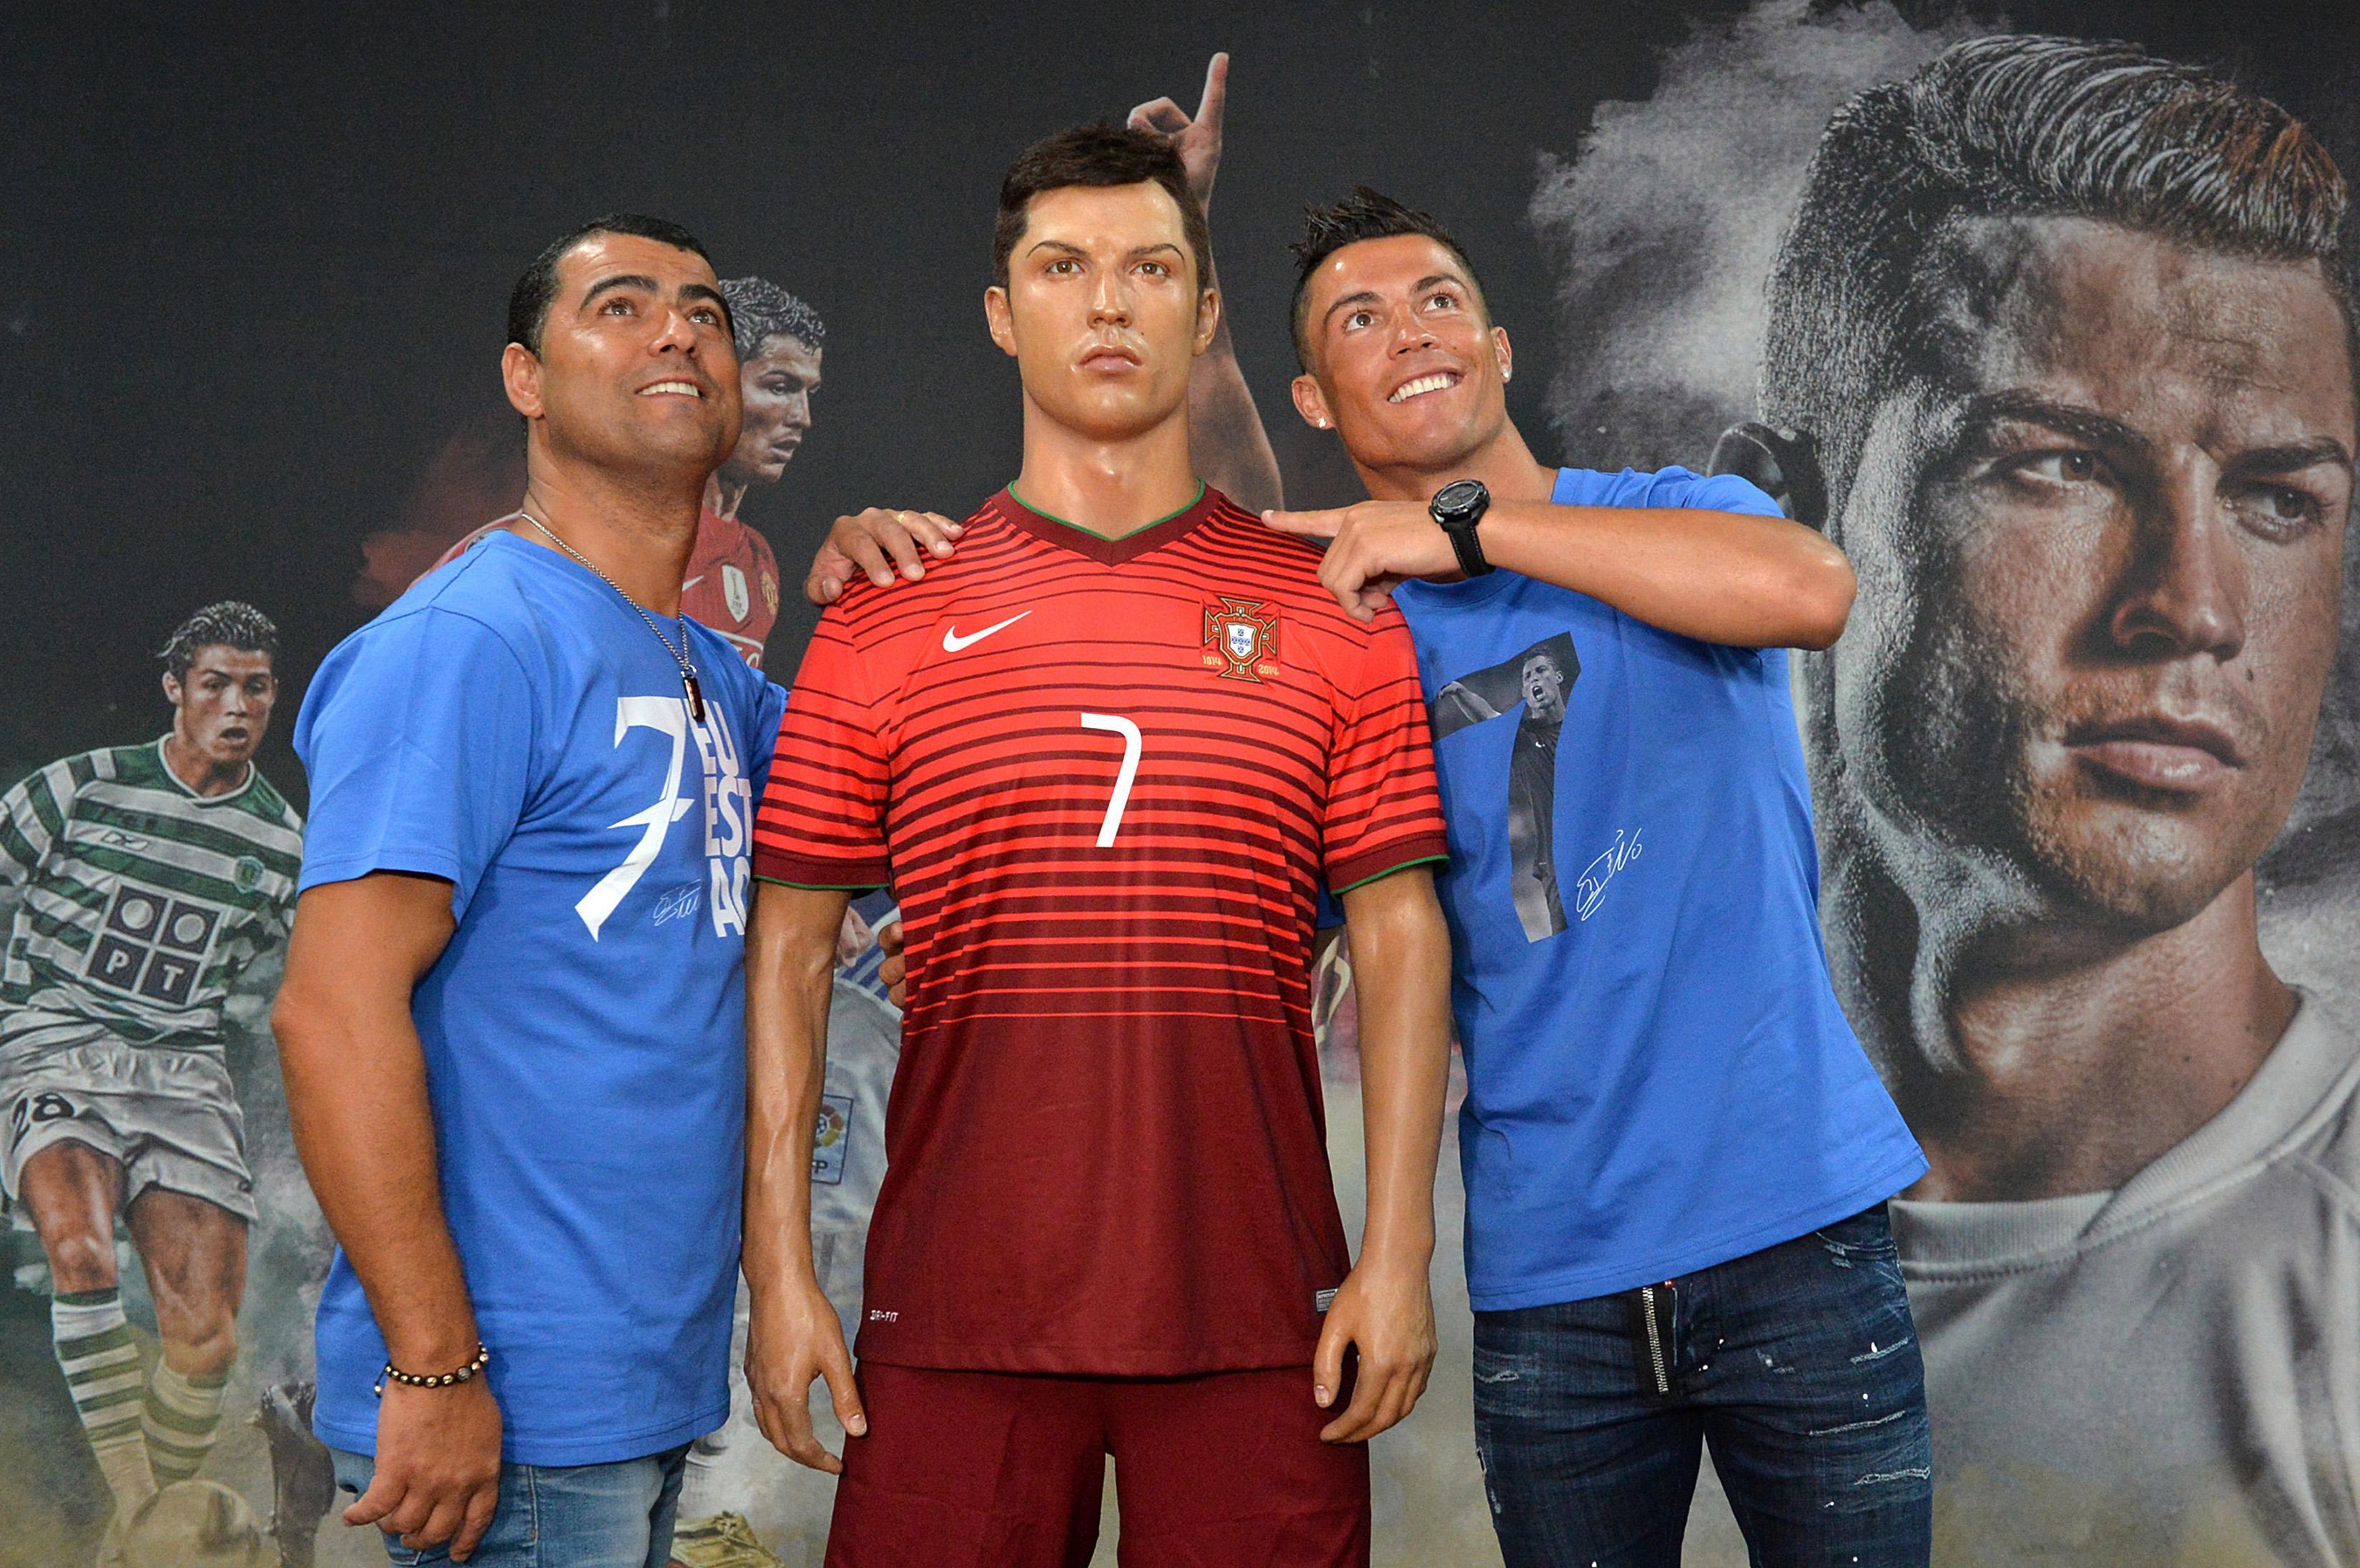 Ronaldo došao na stub srama, brat švercovao njegove dresove